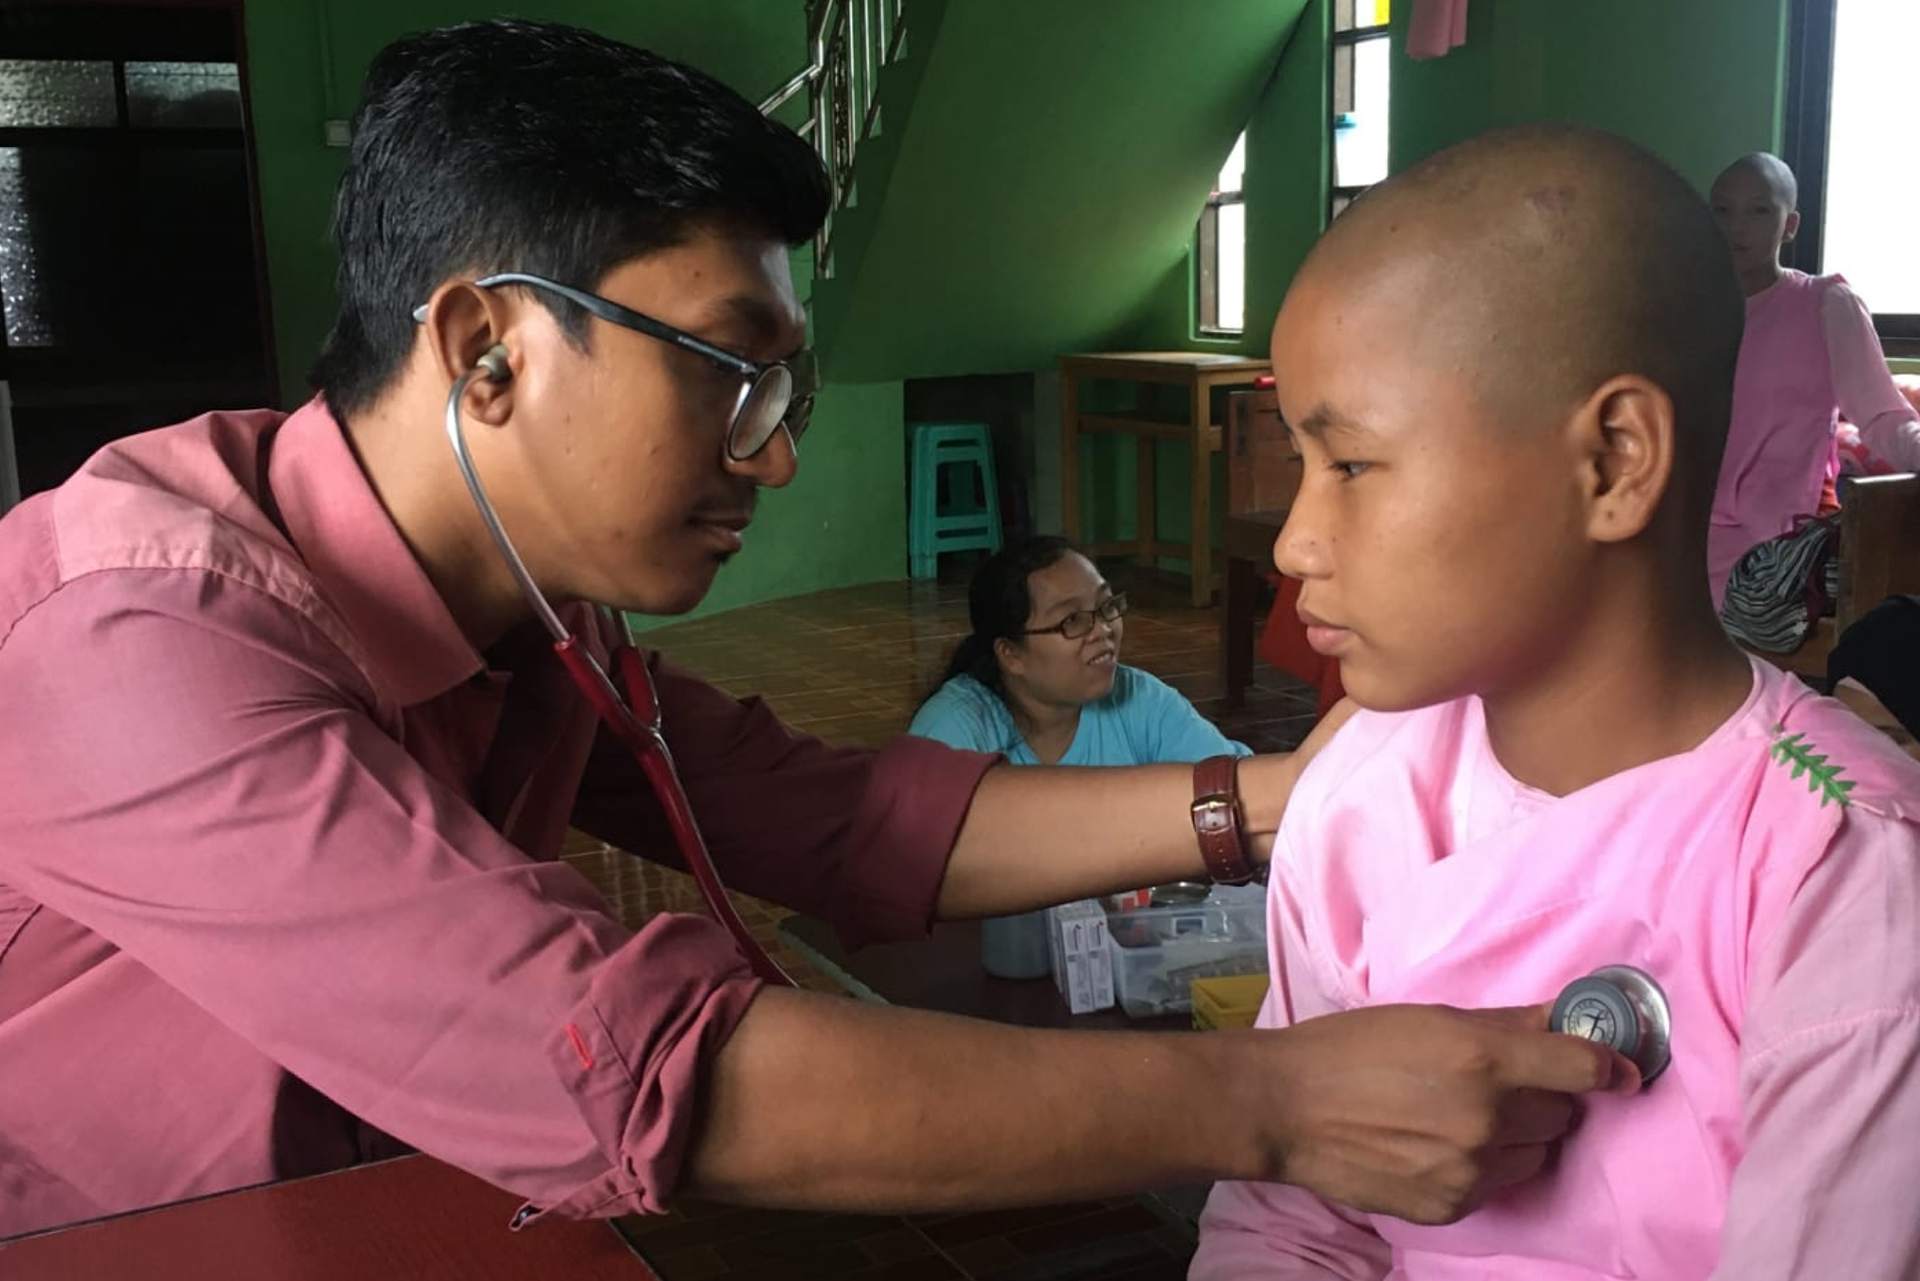 Gesundenuntersuchung im Nonnenkloster, Mobile Gesundheitsversorgung in Myanmar